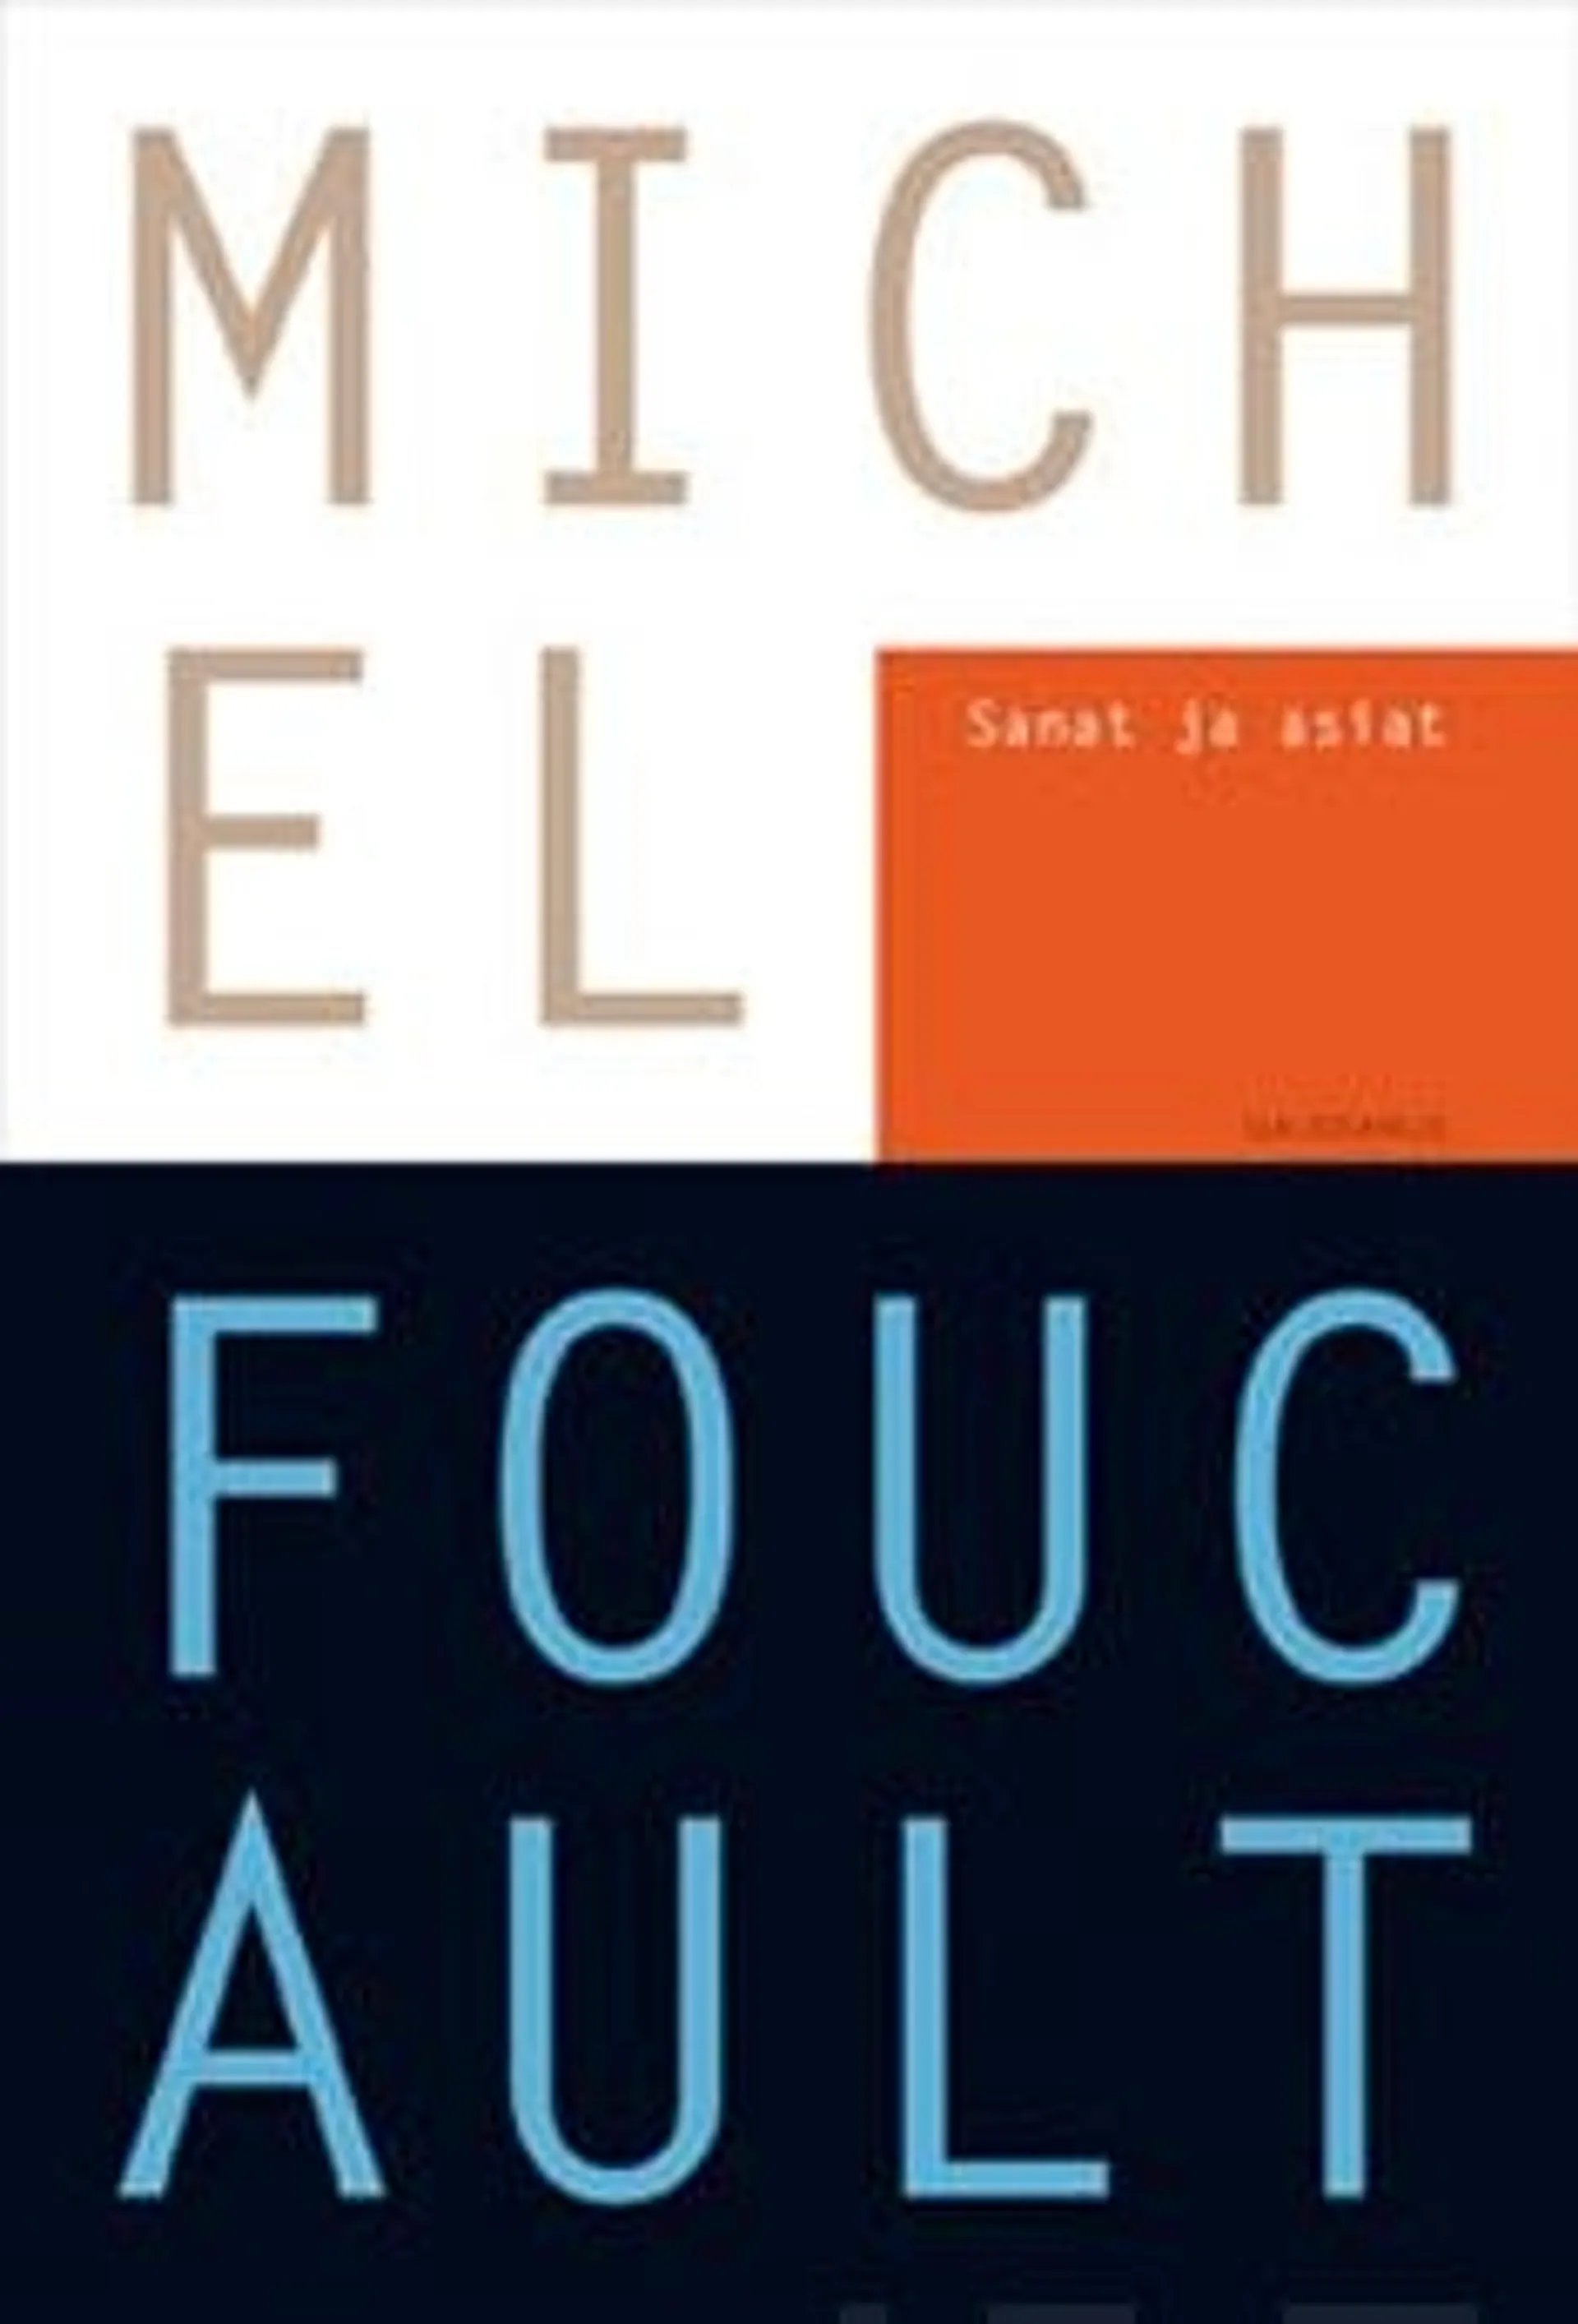 Foucault, Sanat ja asiat - eräs ihmistieteiden arkelogia